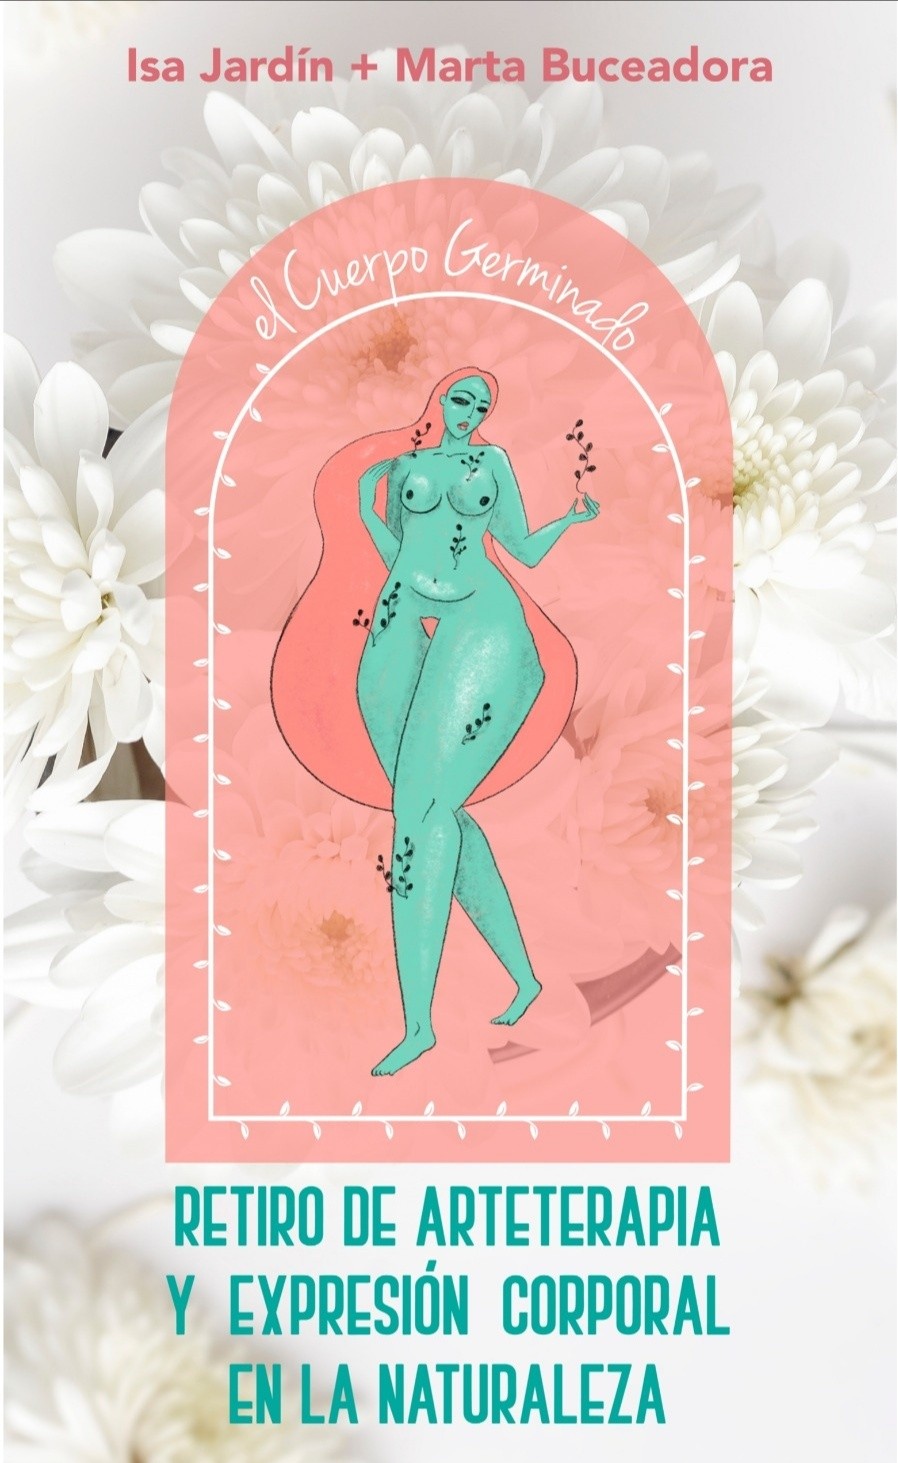 ilustración mujer cuerpo germinado